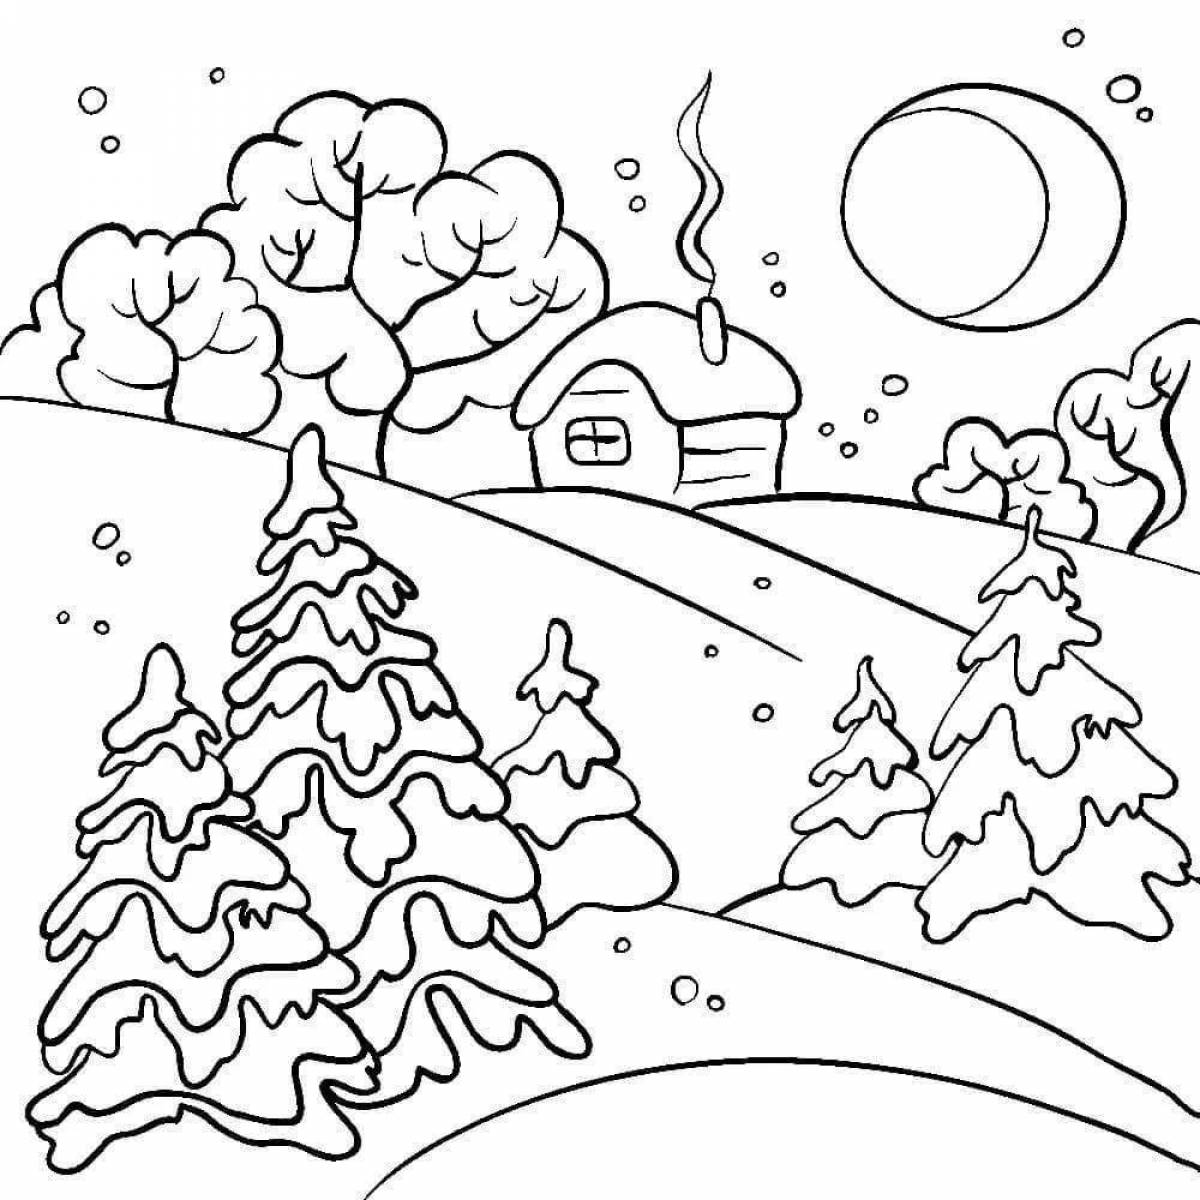 ЗИМНИЙ РИСУНОК для детей. Как нарисовать зимний пейзаж